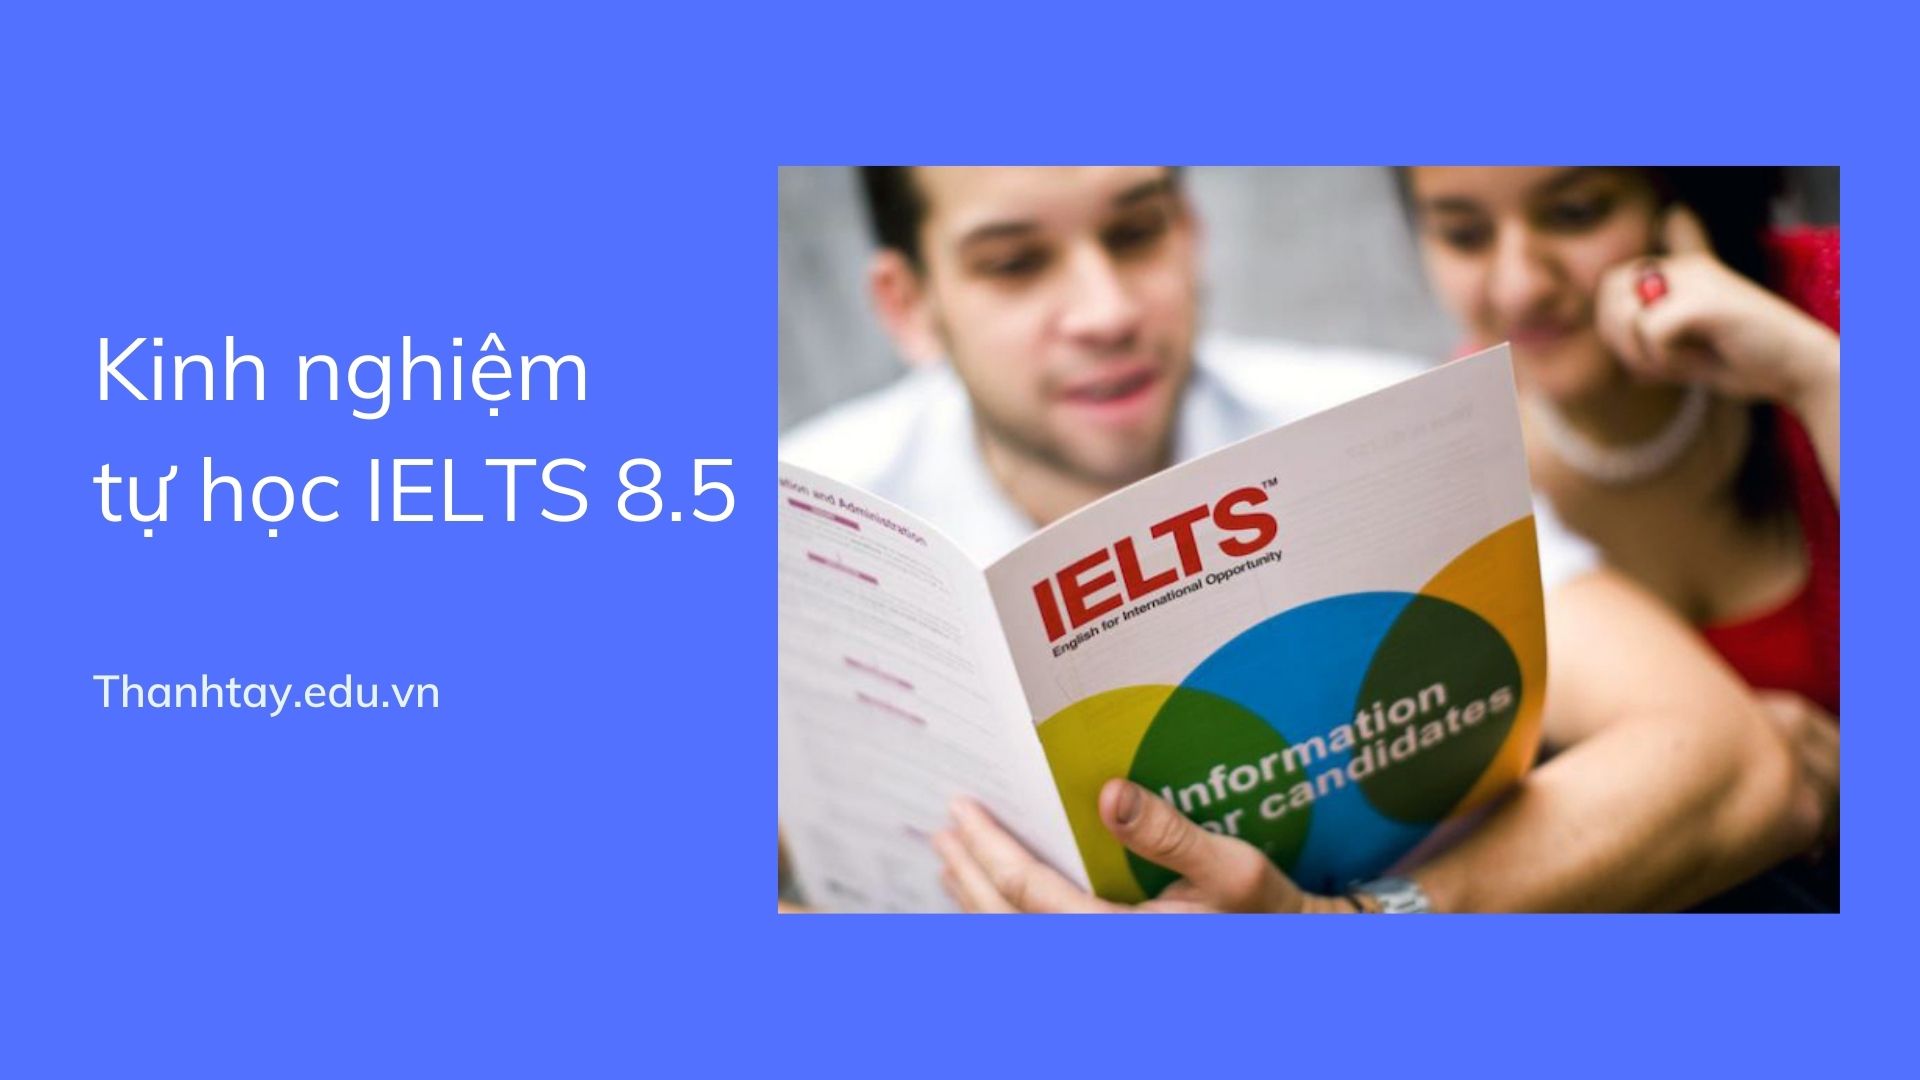 tự học IELTS 8.5